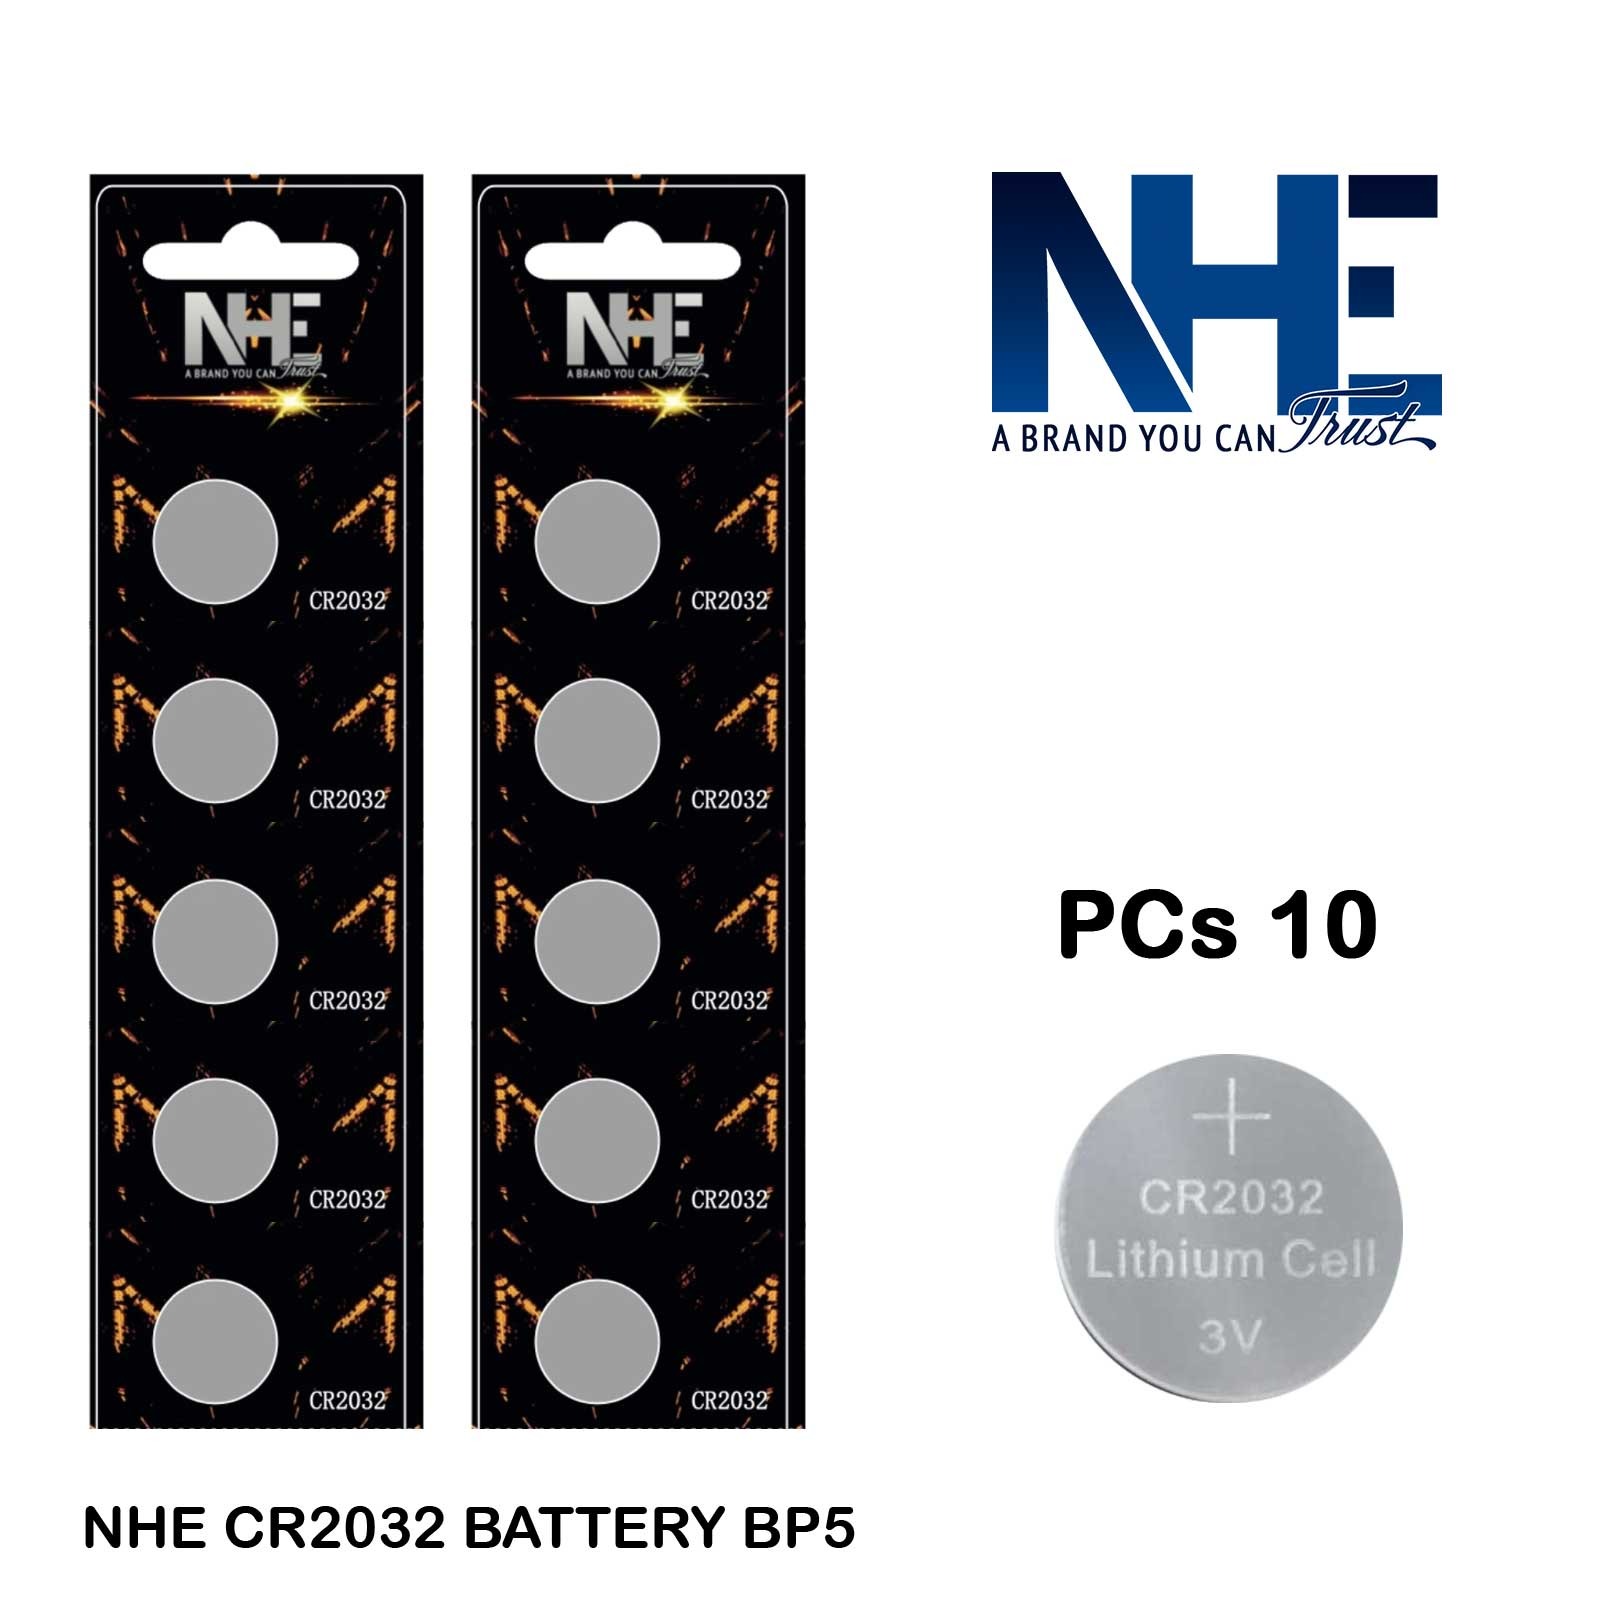 NHE CR2032 Battery BP5 Pack of 10 